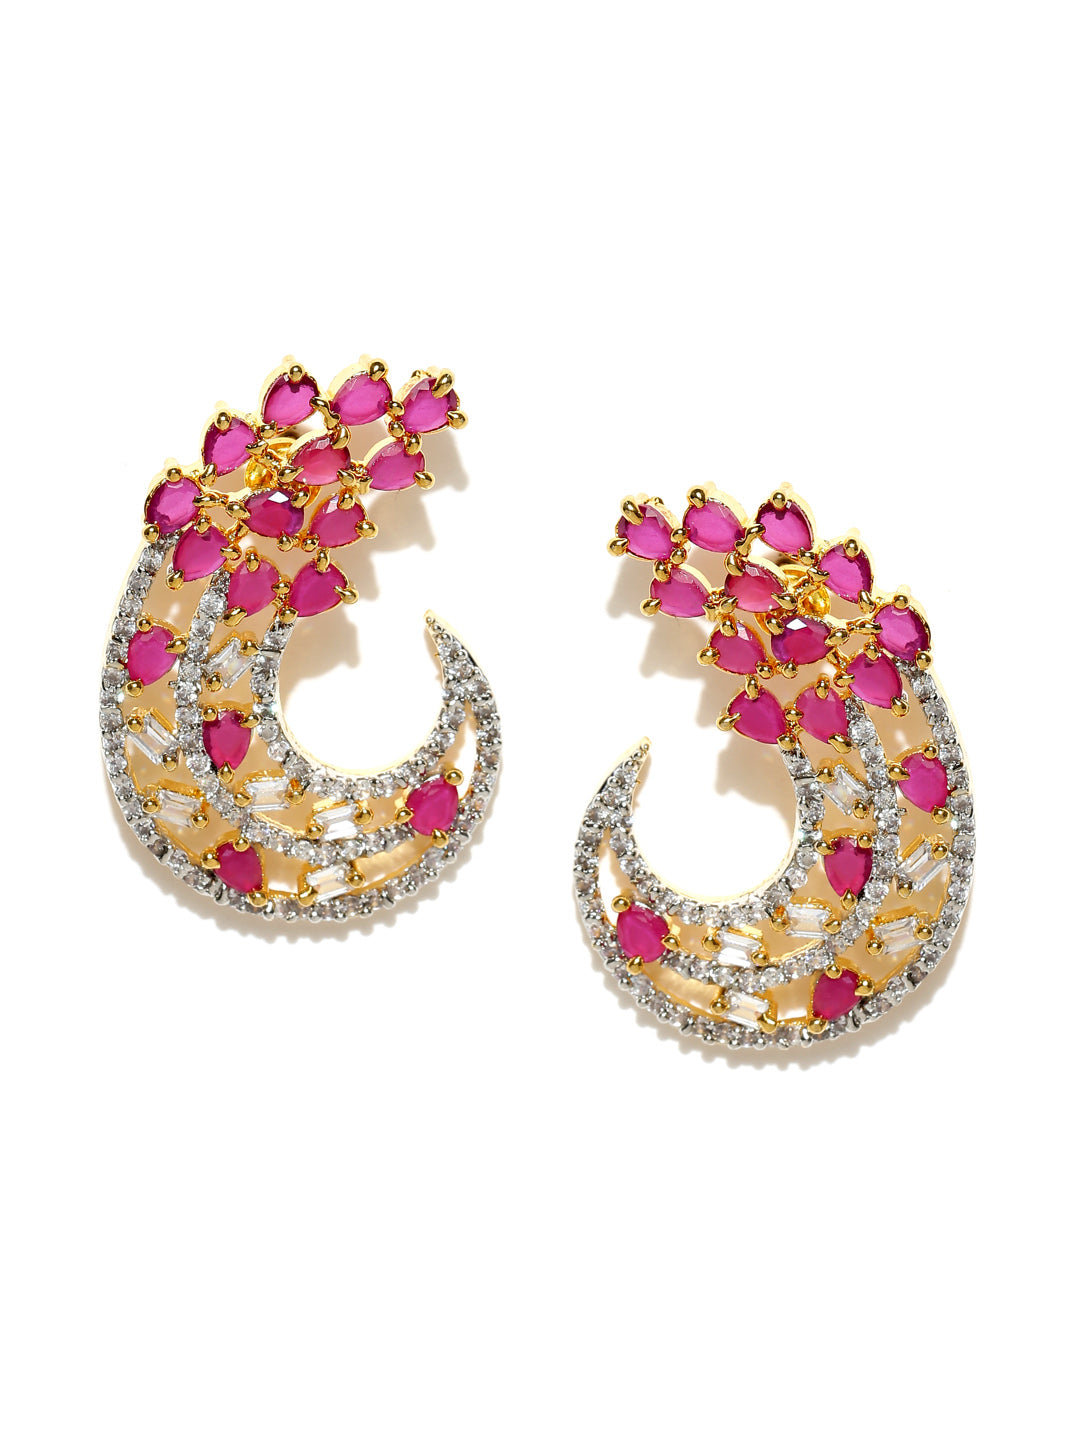 Stunning Partywear American Diamond & Ruby Earrings For Girls or Women